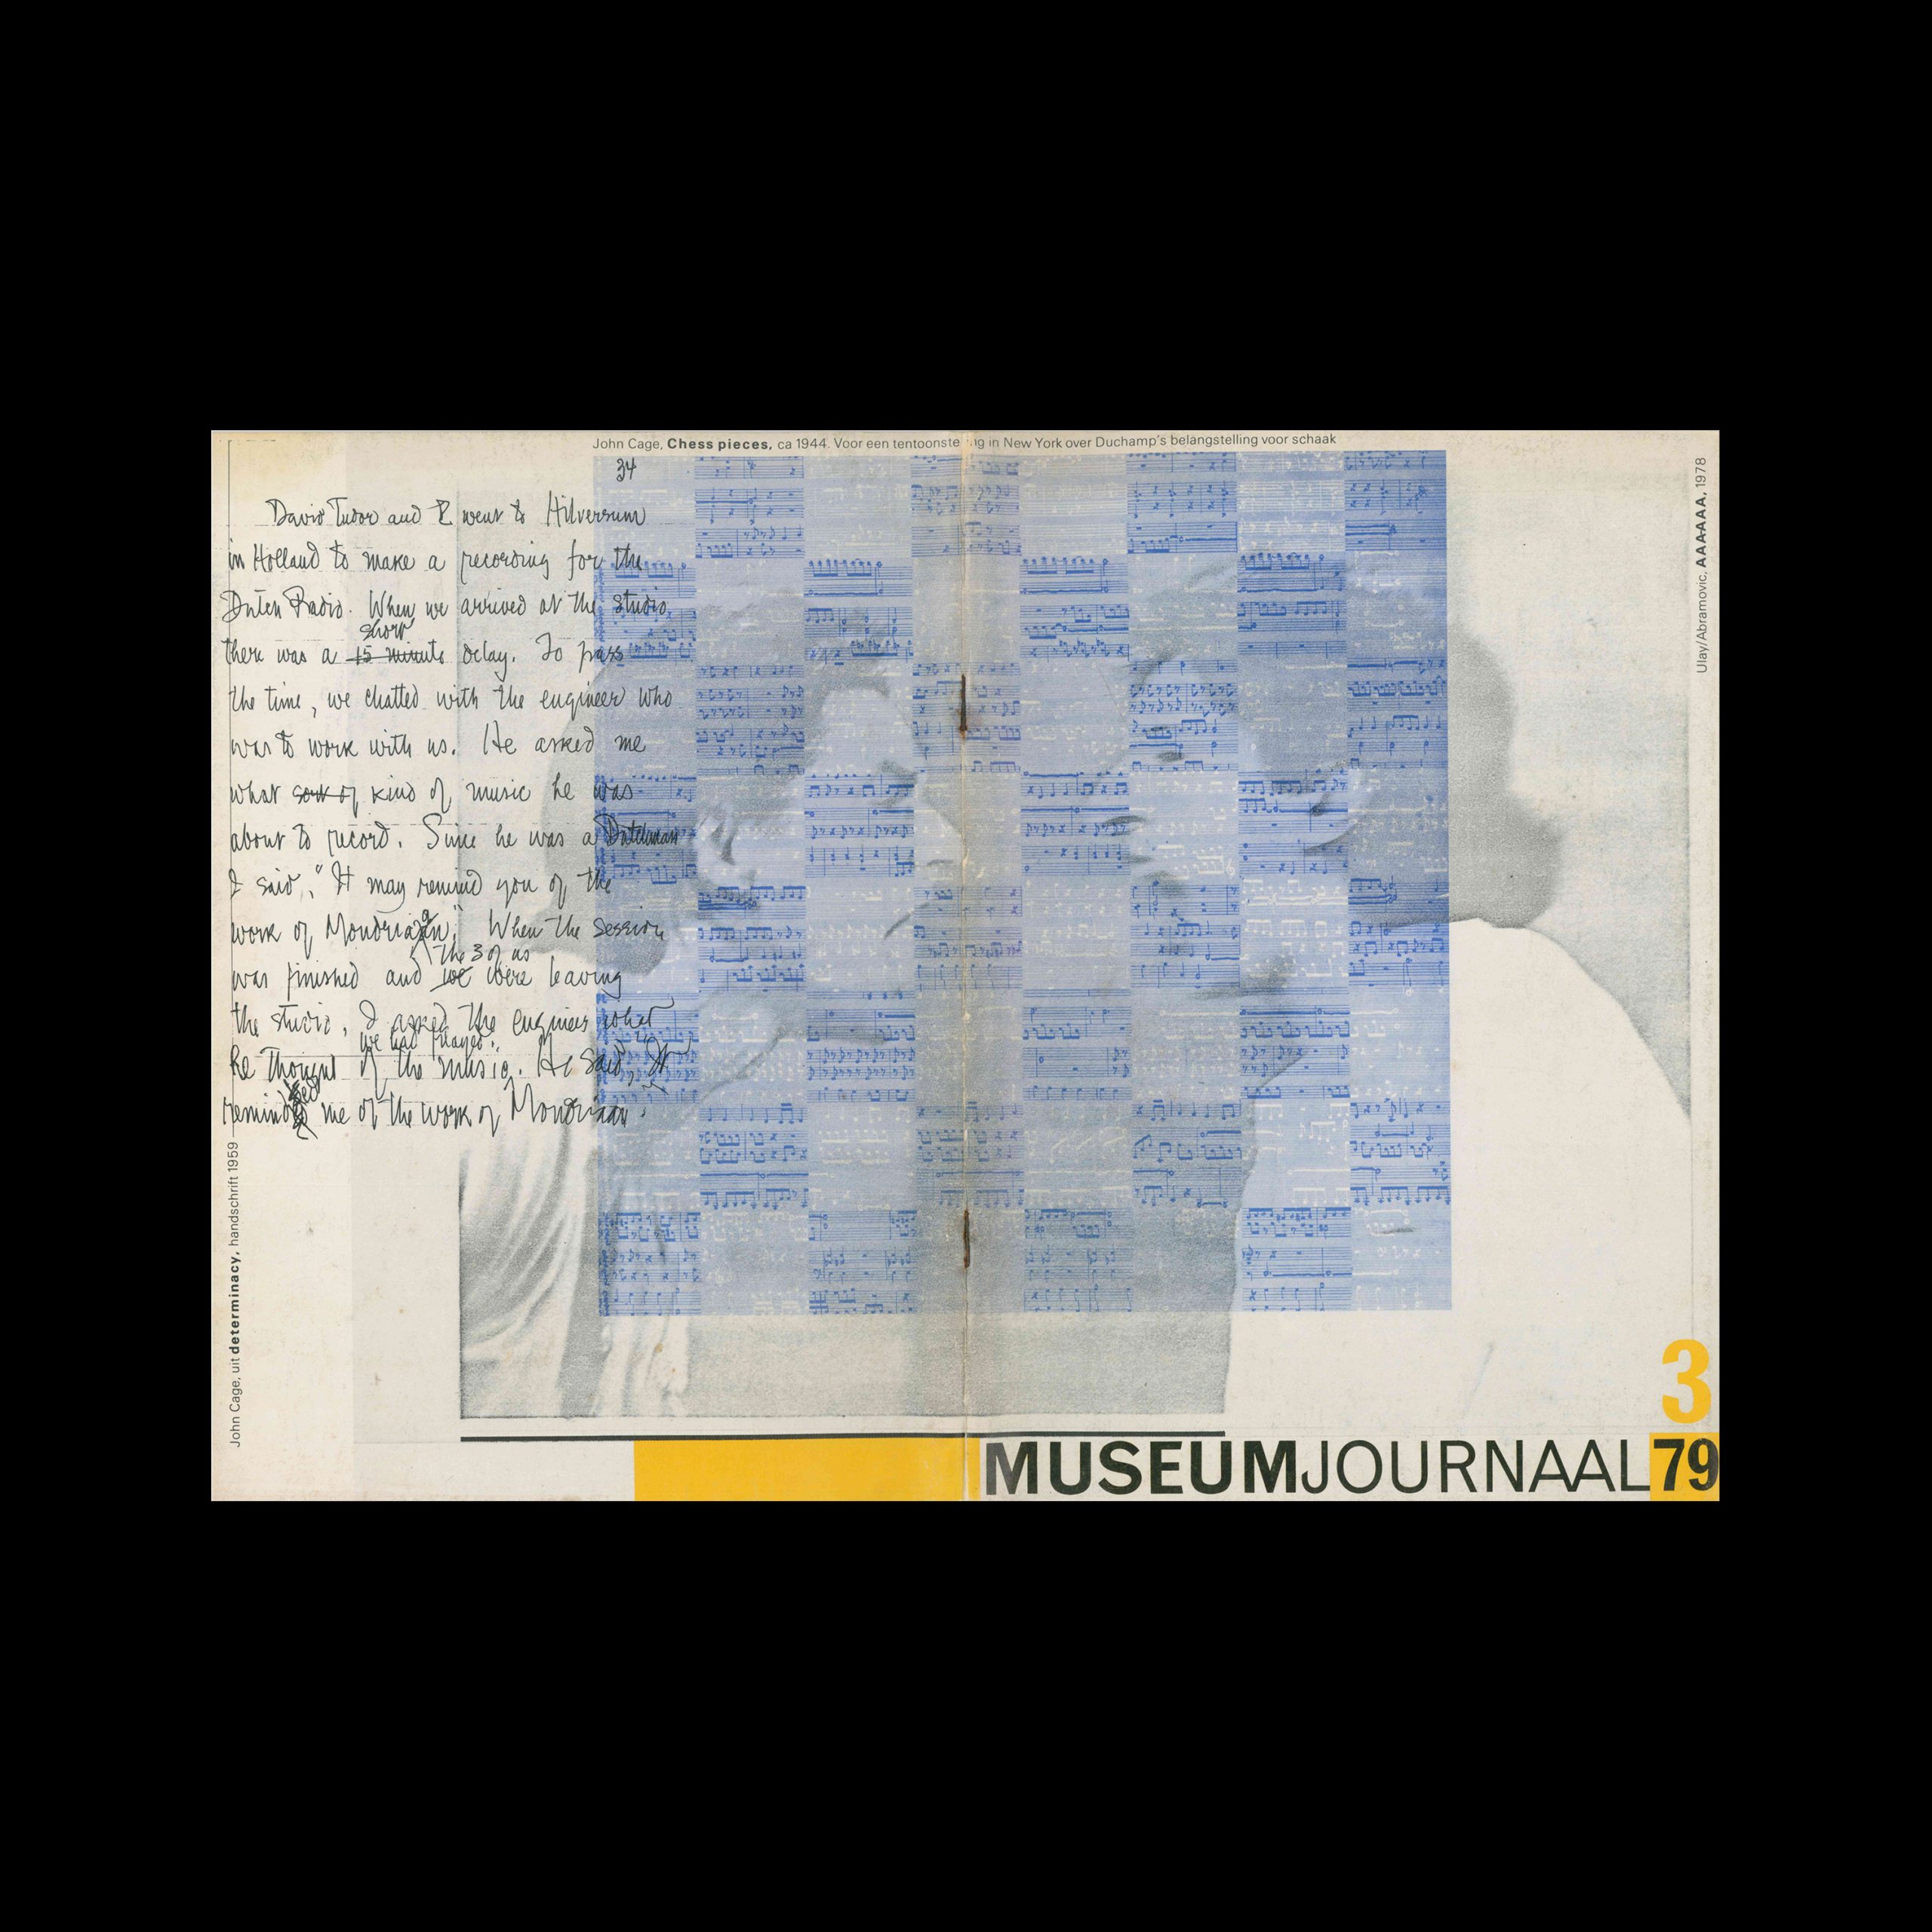 Museumjournaal, Serie 24 no3, 1979. Cover design by Jan van Toorn.